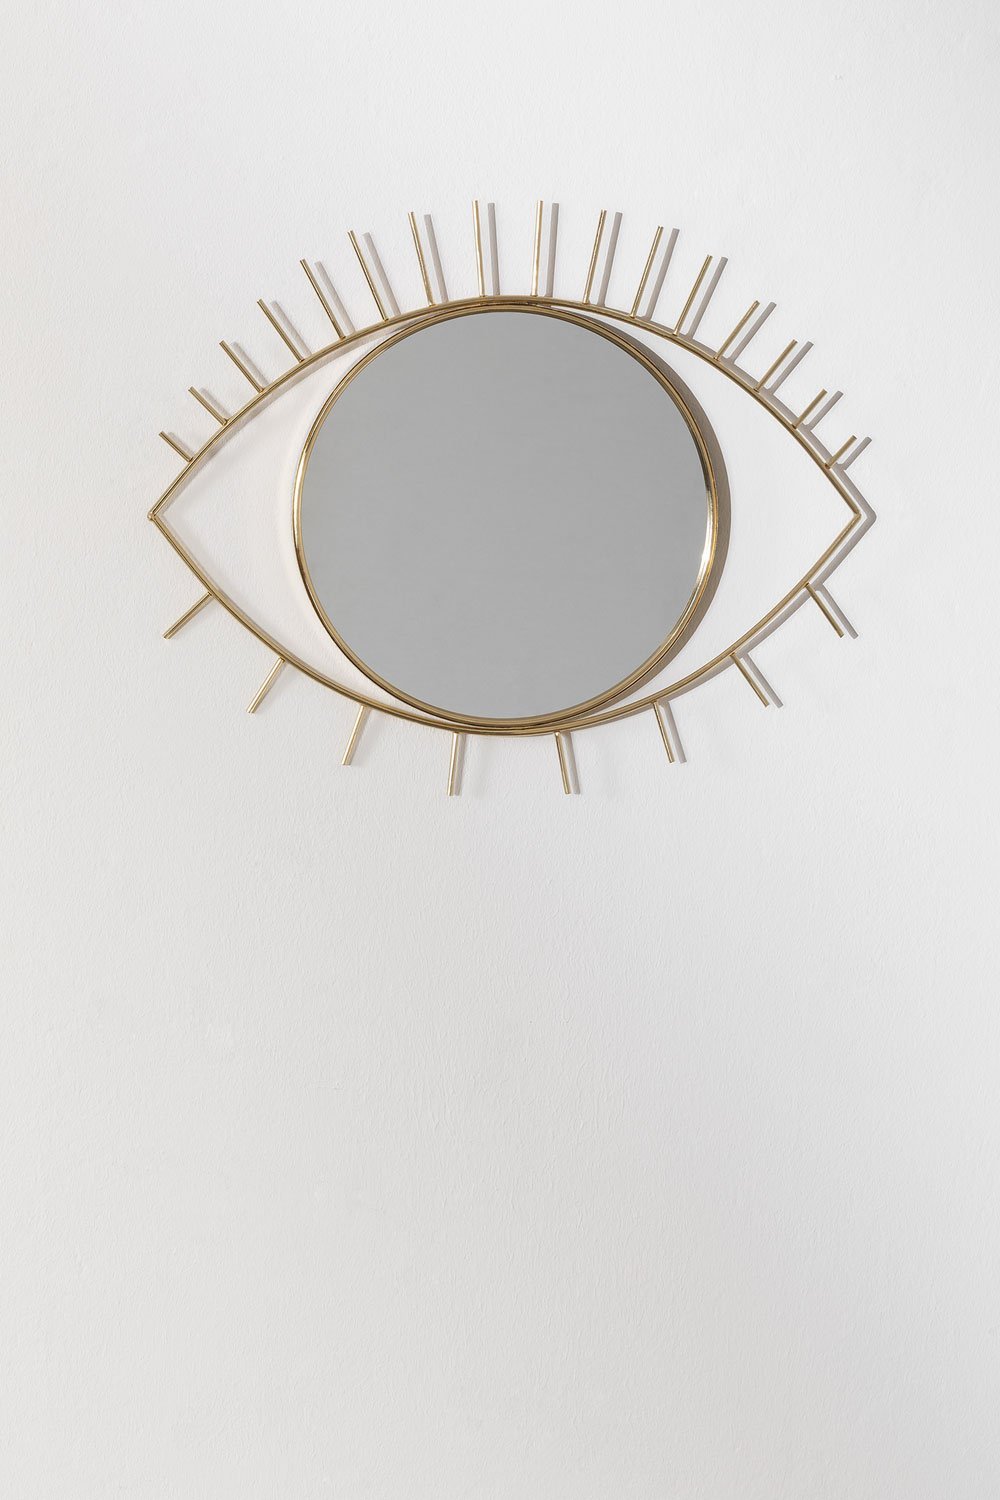 Espejo de Pared en Metal Efecto Ventana (180x59 cm) Paola L - SKLUM